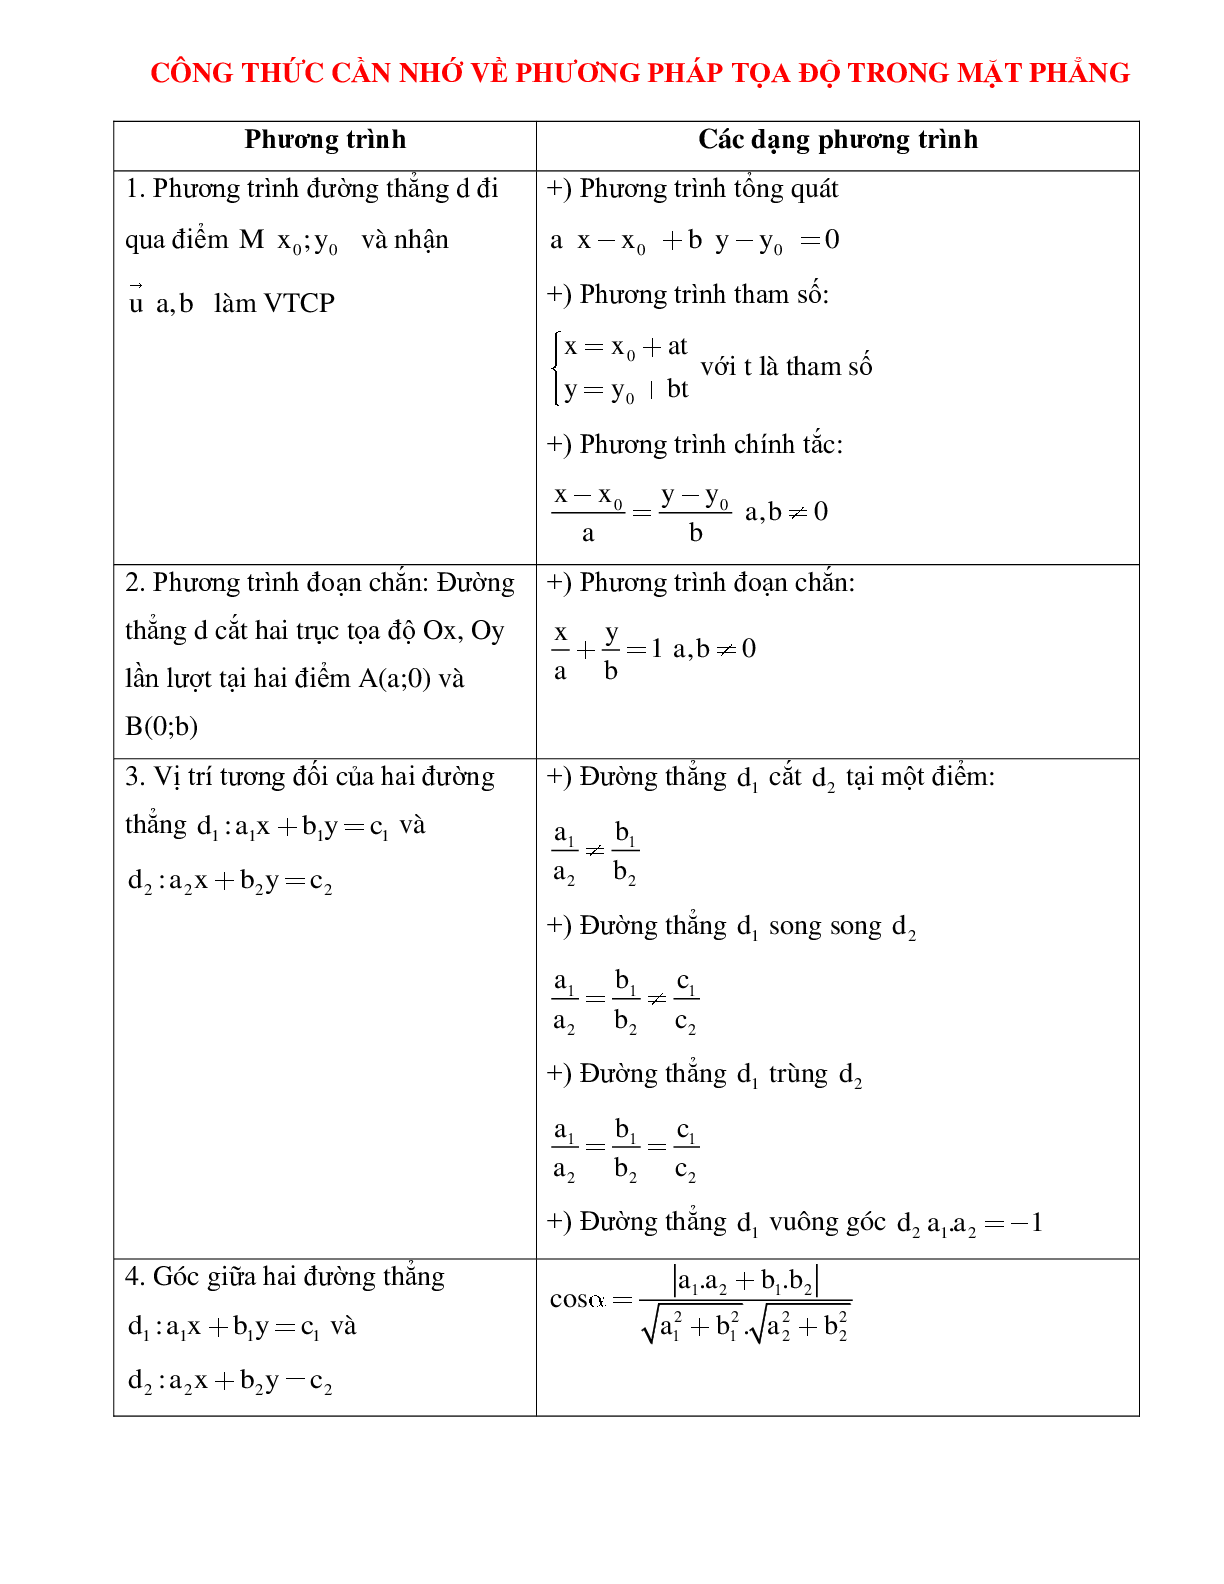 Công thức cần nhớ về phương pháp tọa độ trong mặt phẳng (trang 1)